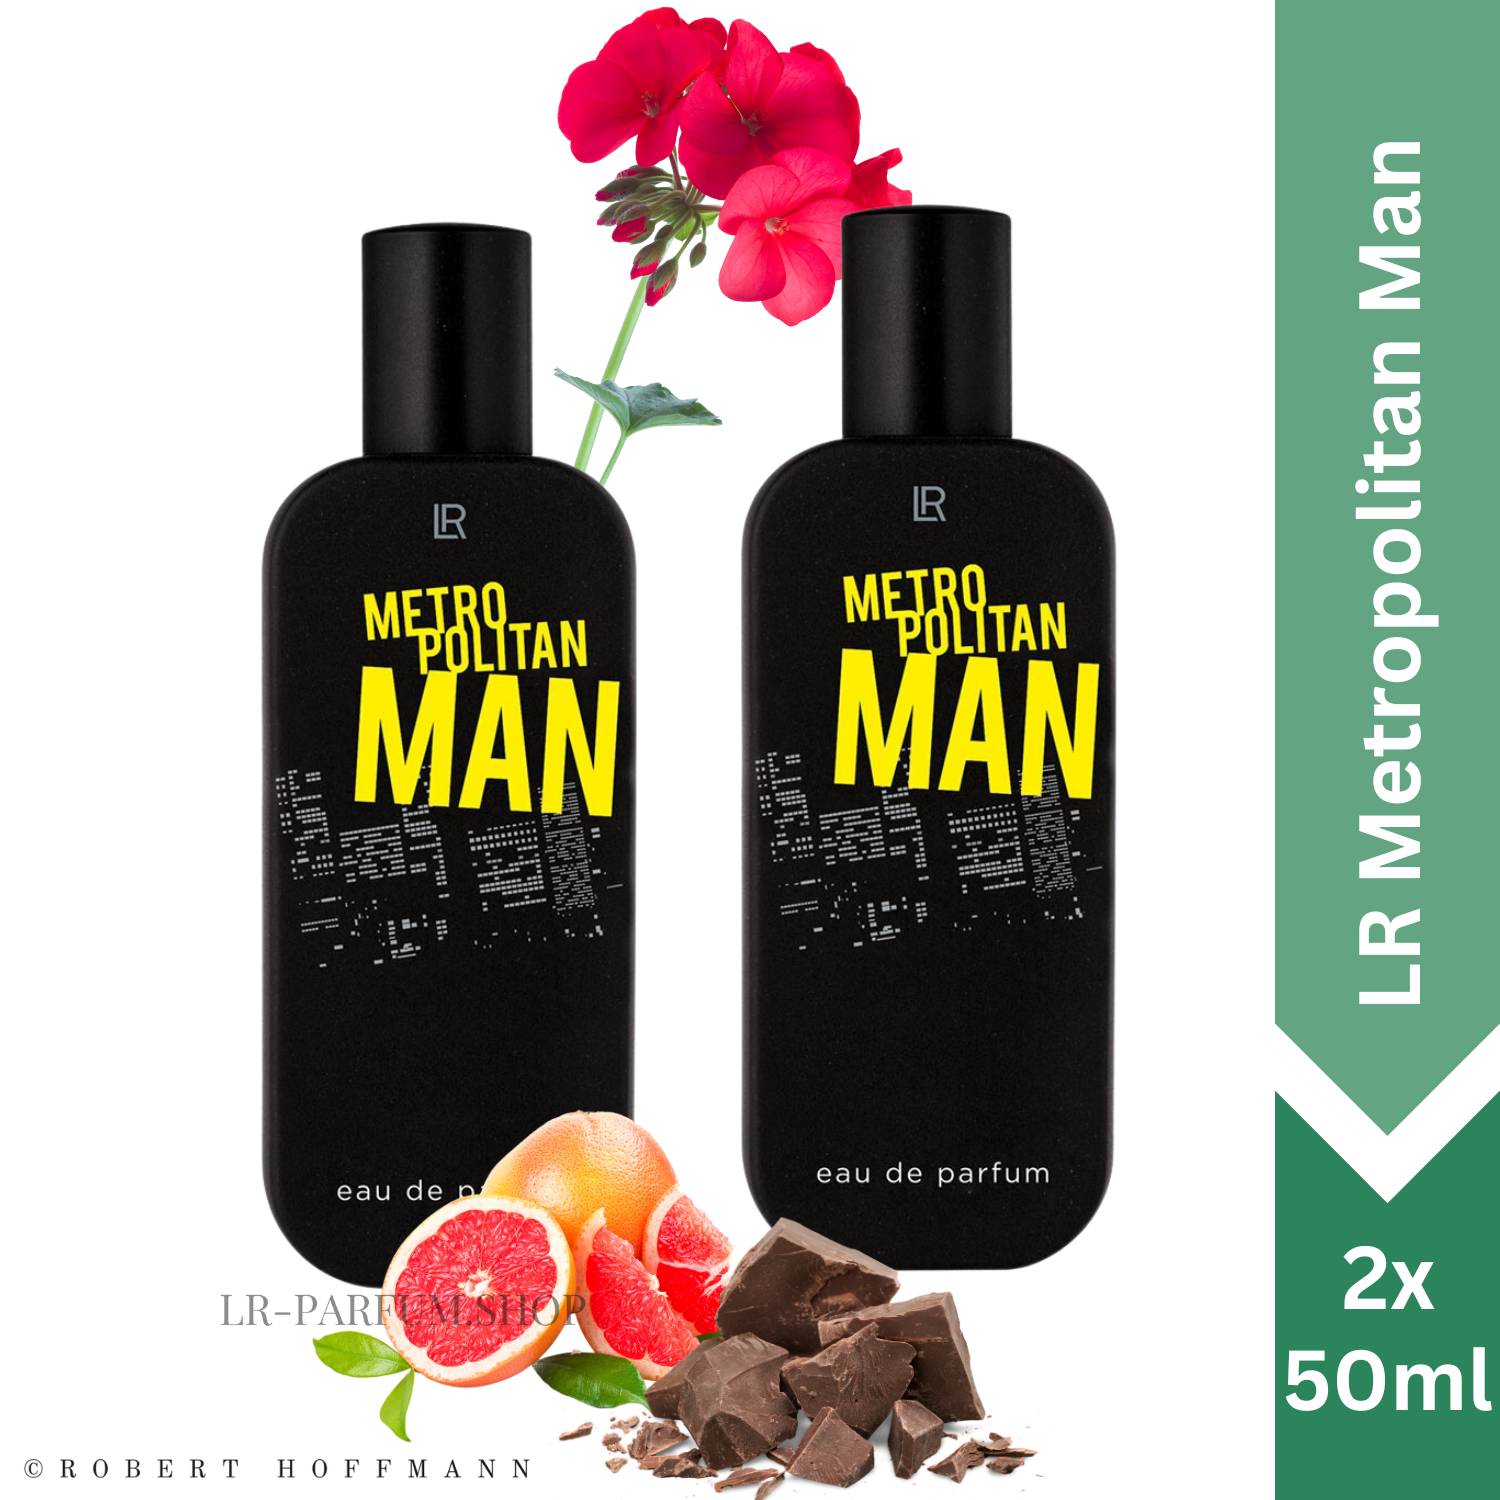 LR Metropolitan Man - Eau de Parfum, 2er Pack (2x50ml) - LR-Parfum.shop